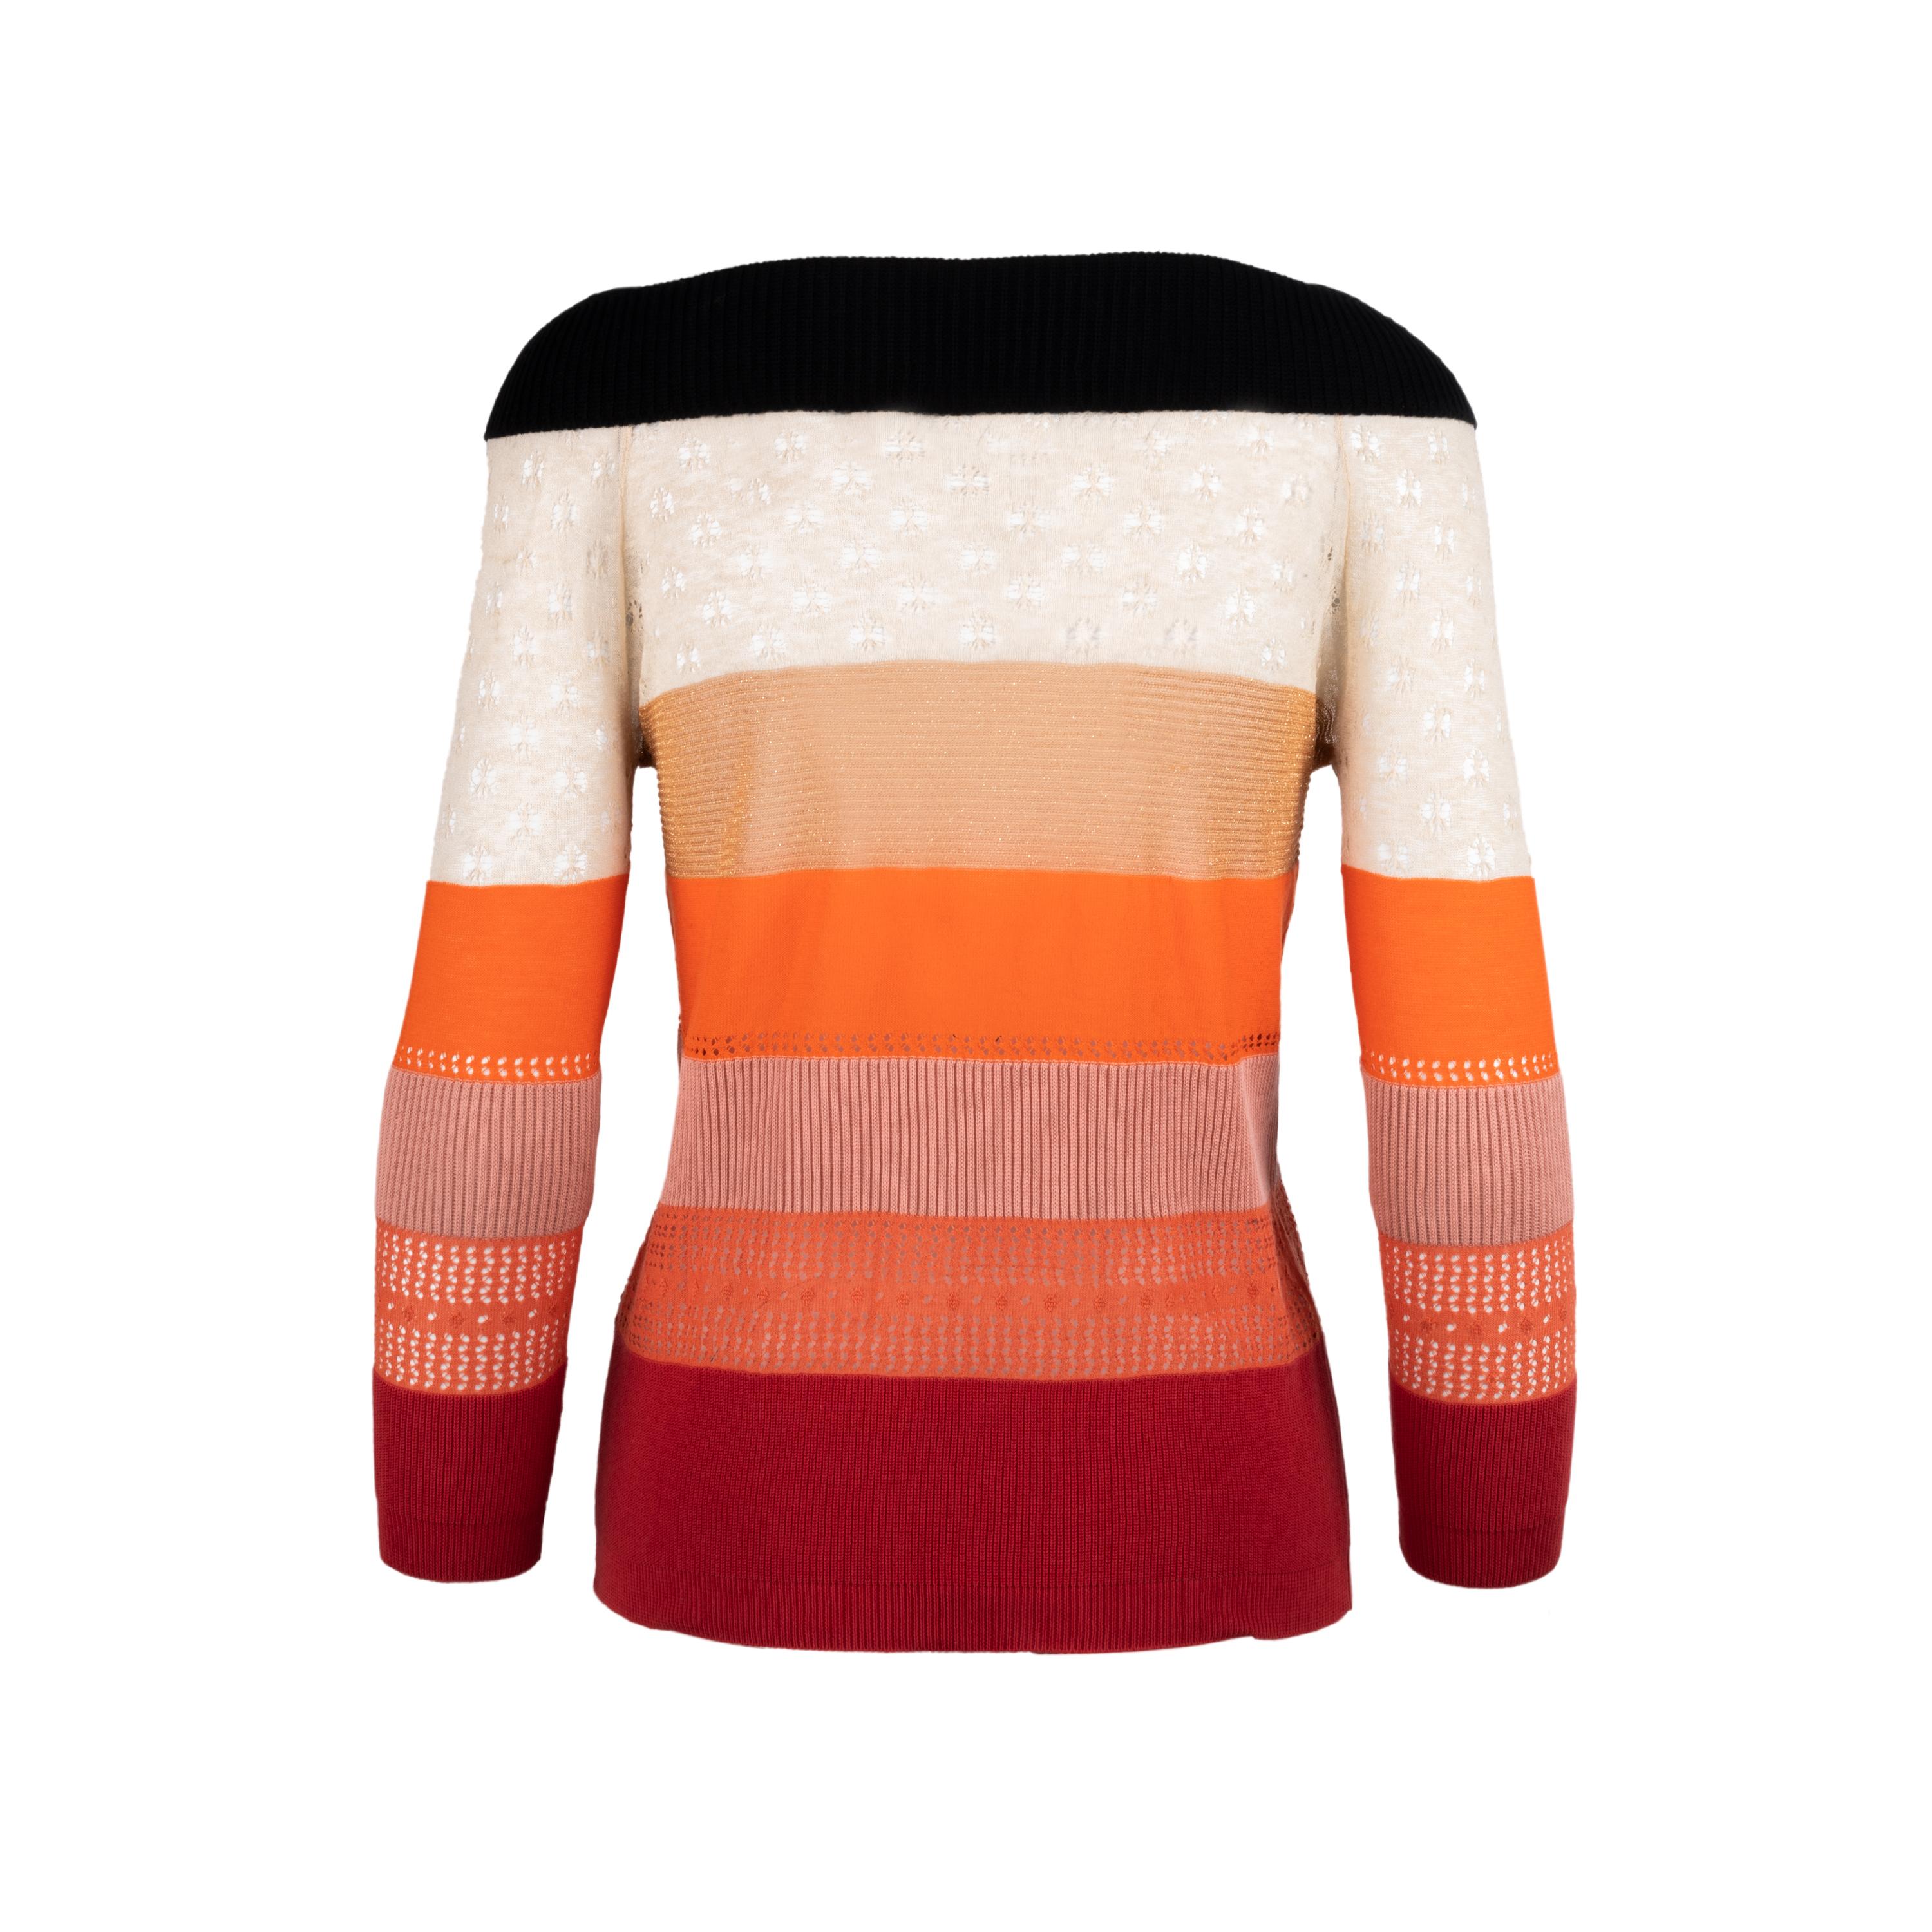 Sonia Rykiel mehrfarbiger Pullover aus halbdurchsichtiger Baumwolle. Boot-Ausschnitt Design.